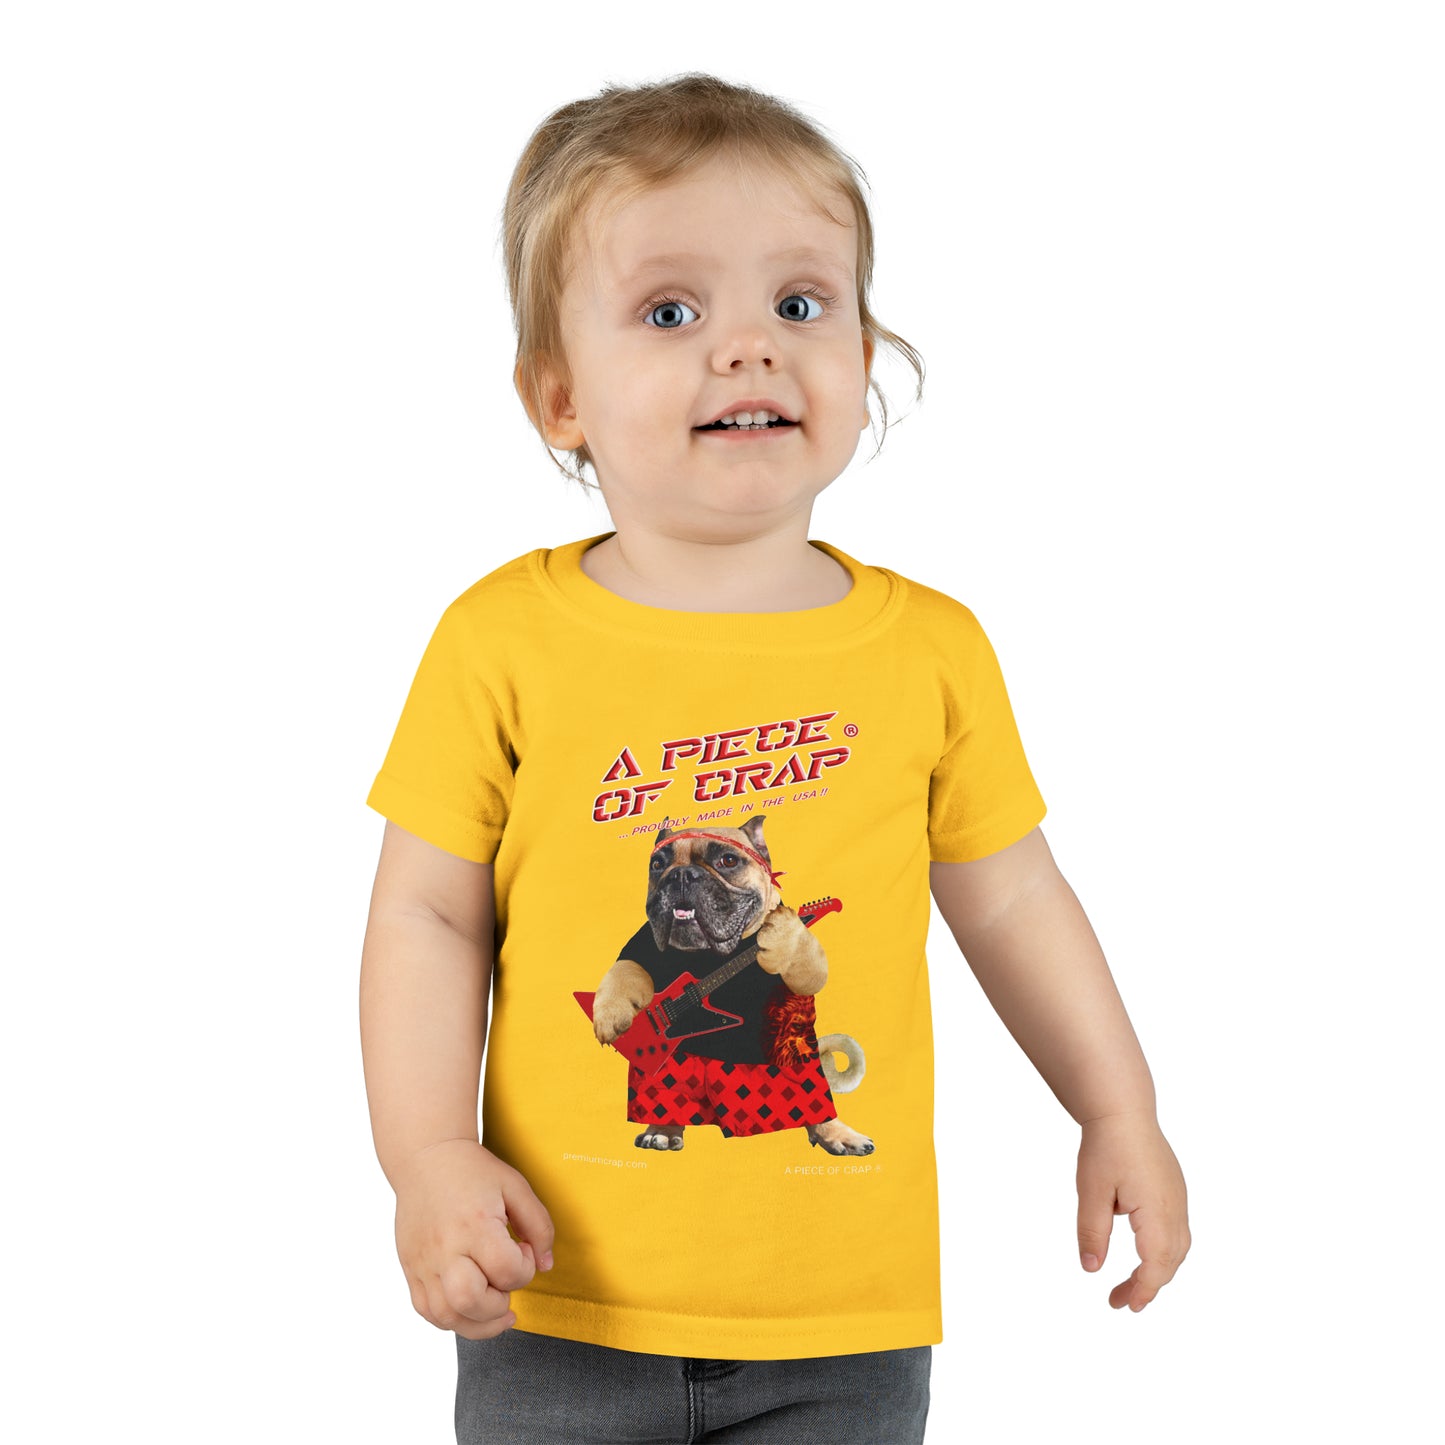 A Piece Of Crap II Toddler T-shirt